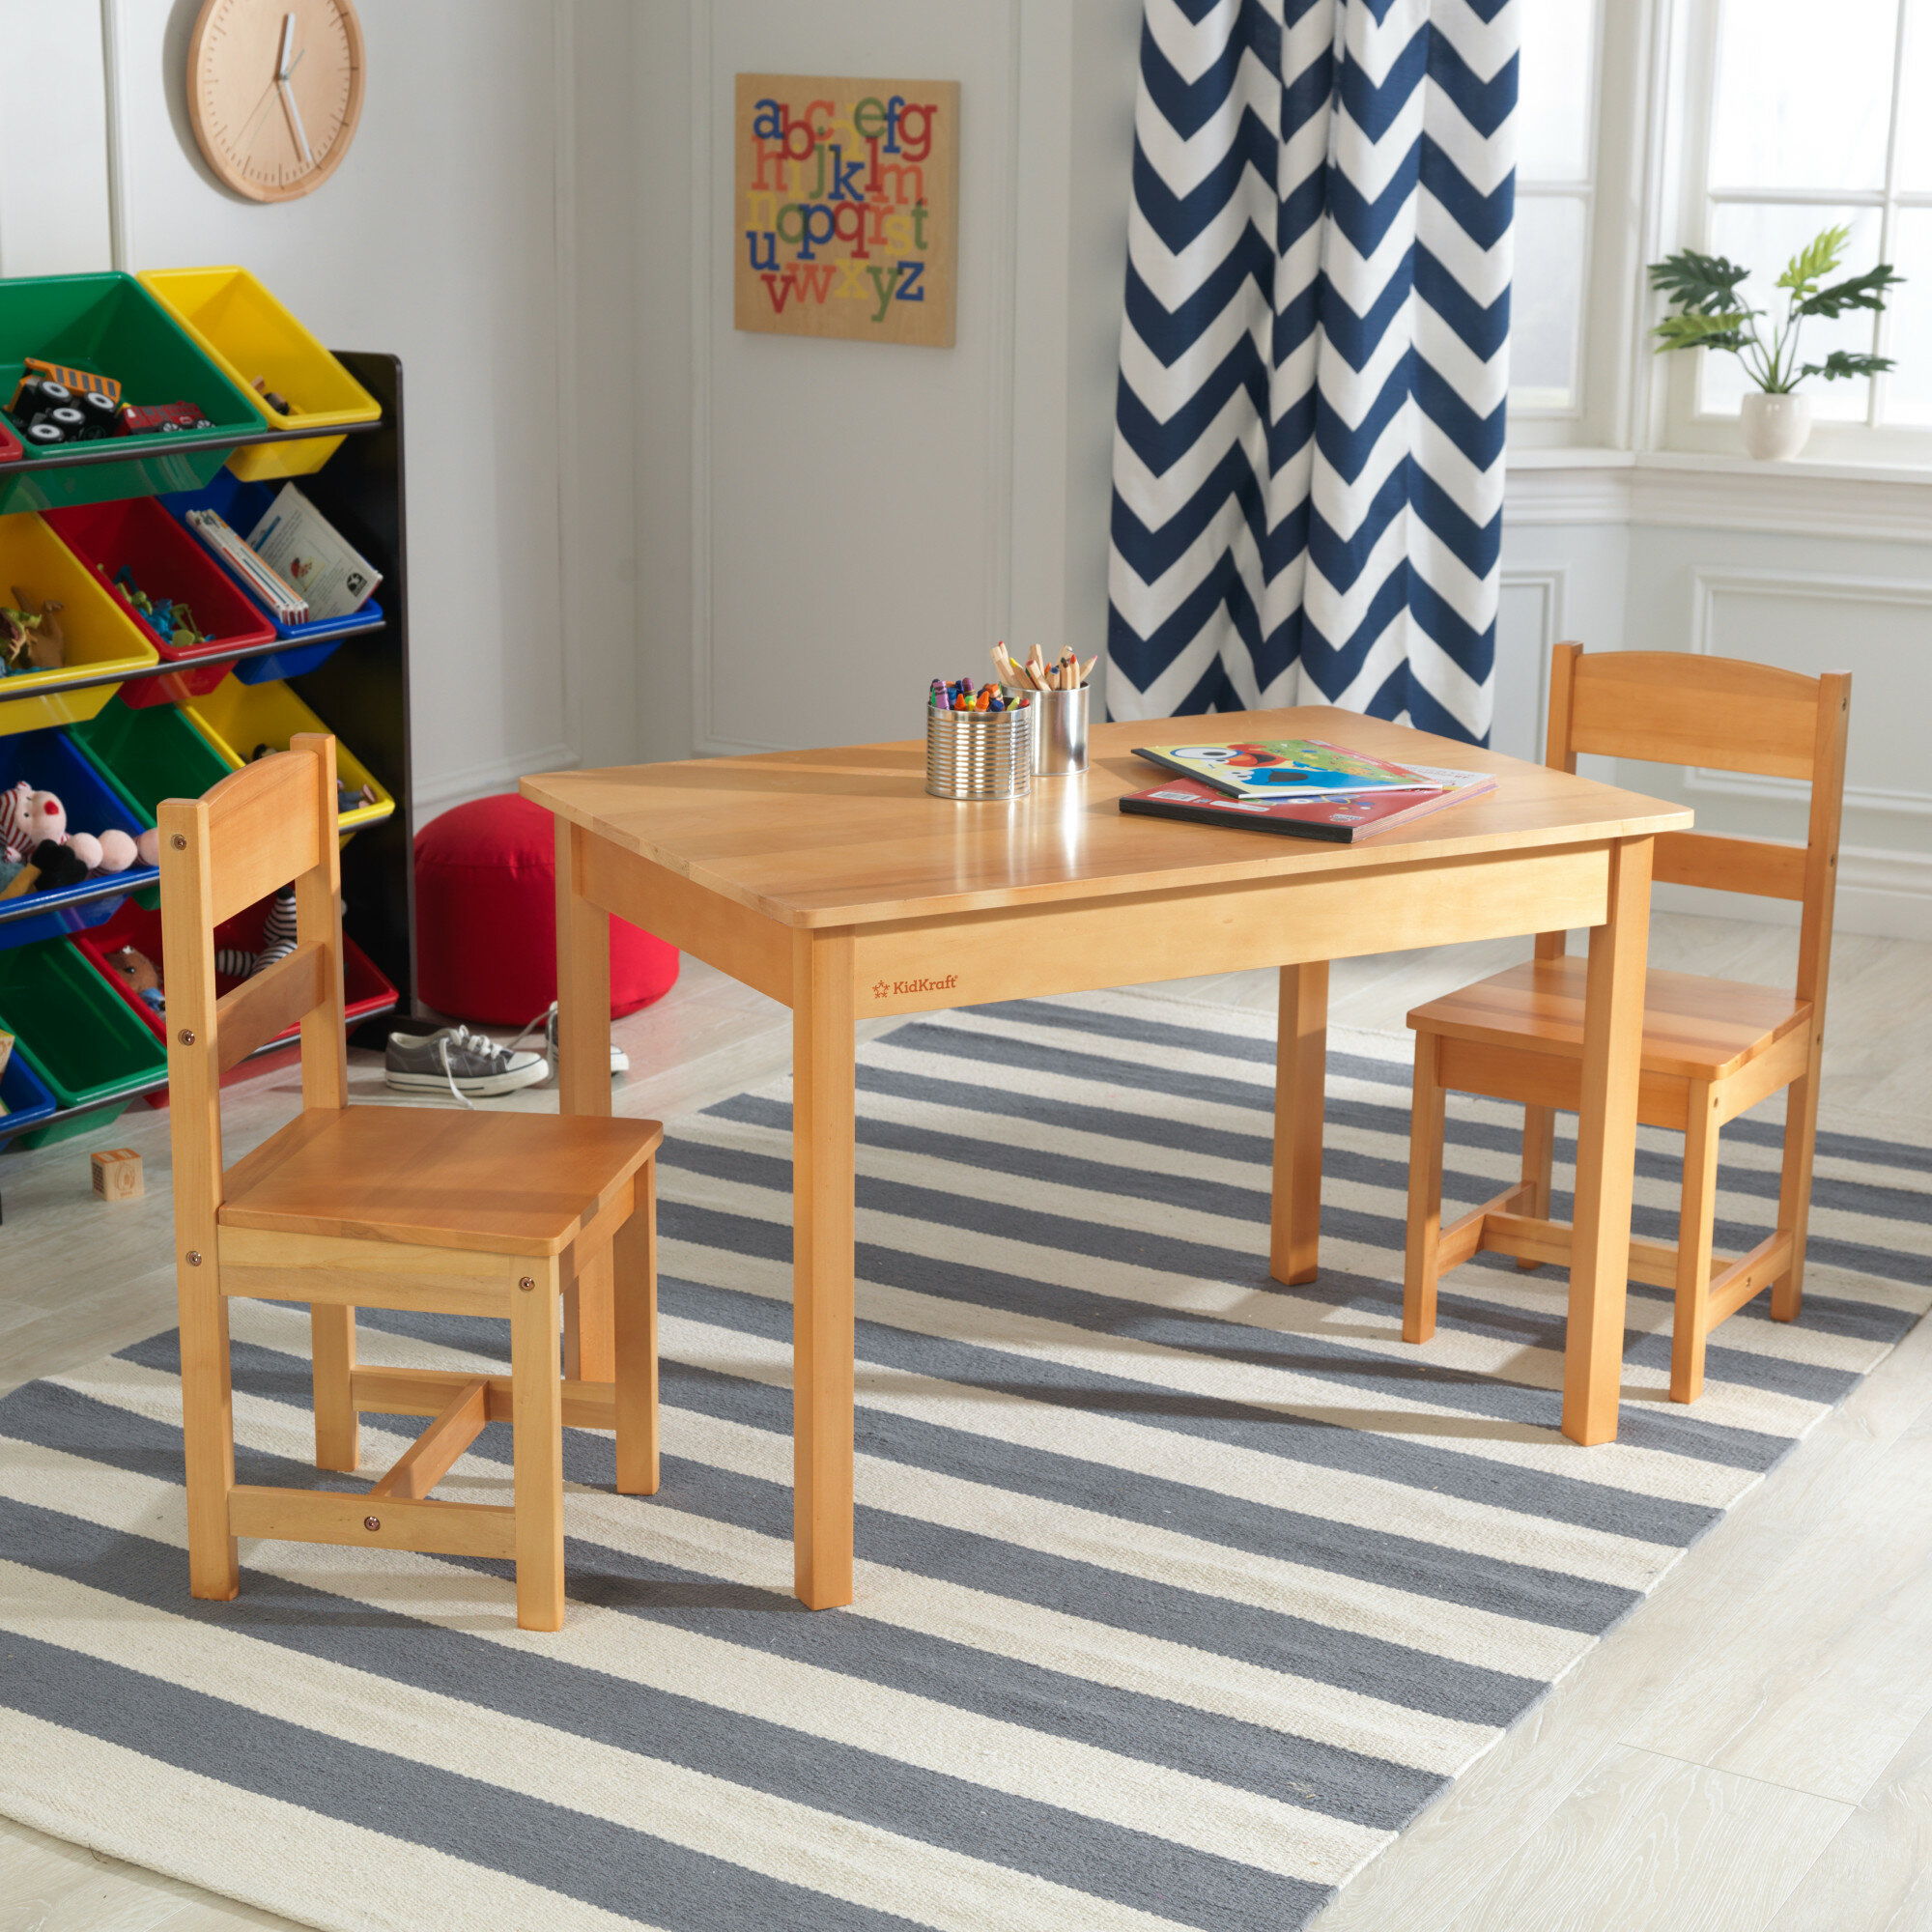 Kidkraft Kids Rectangular Play Activity Table And Chair Set Reviews Wayfair